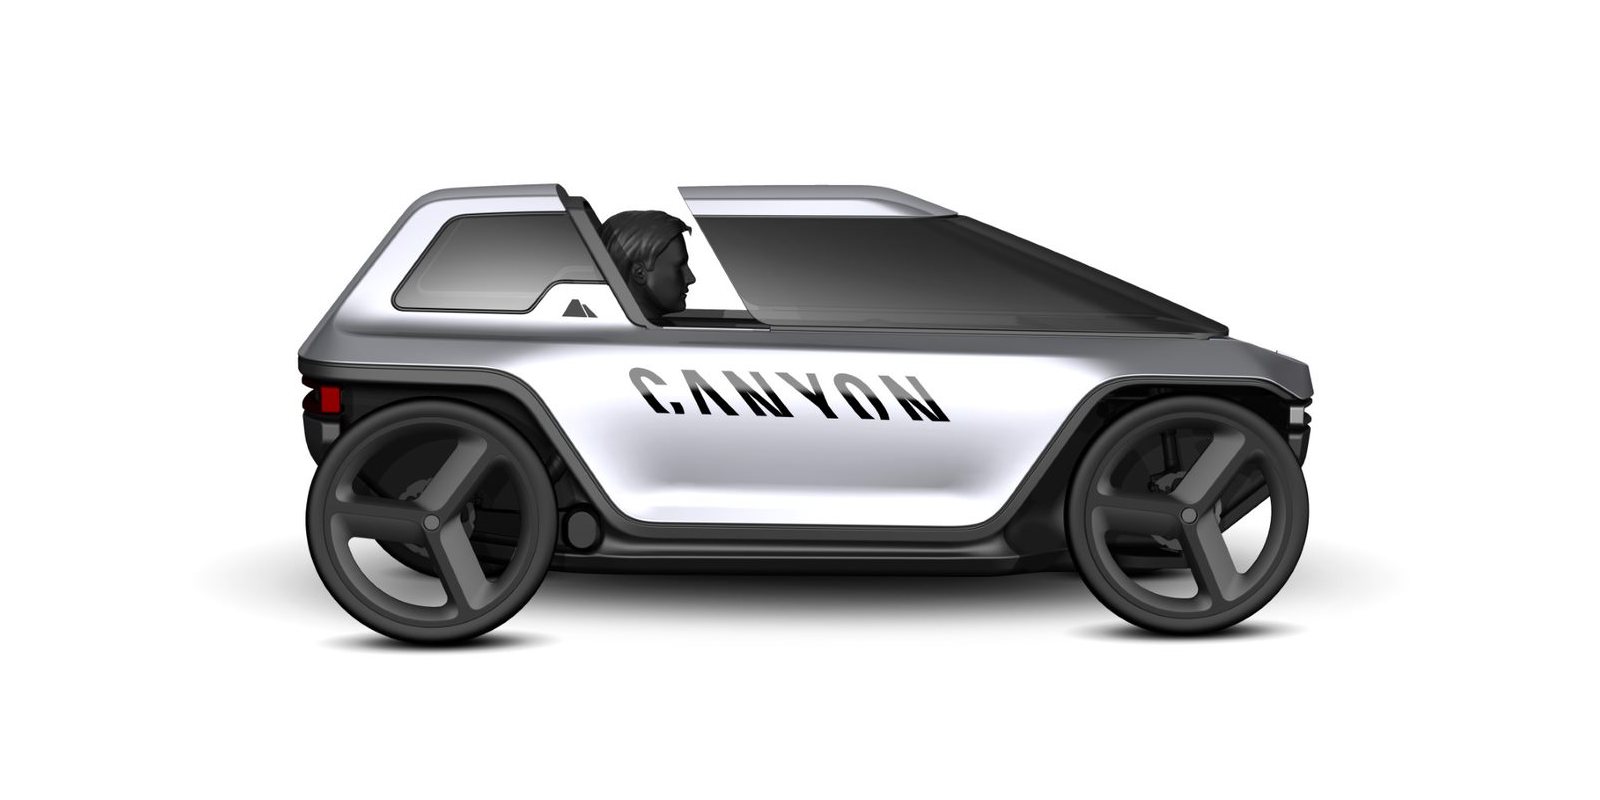 L'Allemand Canyon présente un concept de voiture à pédale à assistance électrique